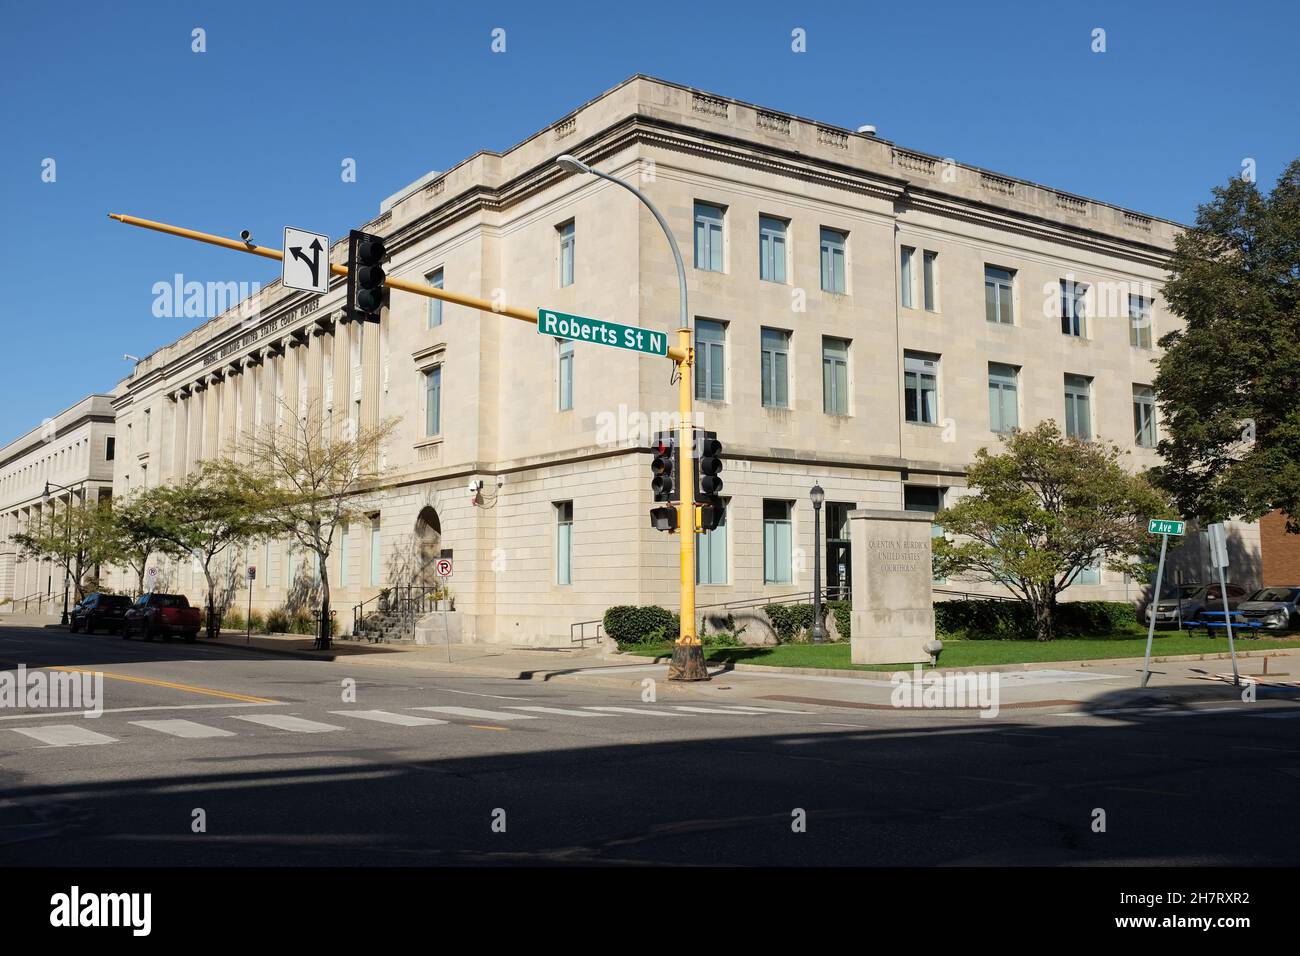 FARGO, DAKOTA DU NORD - 4 octobre 2021 : le palais de justice américain Quentin N. Burdick, à l'angle de First Avenue et Roberts Street. Banque D'Images